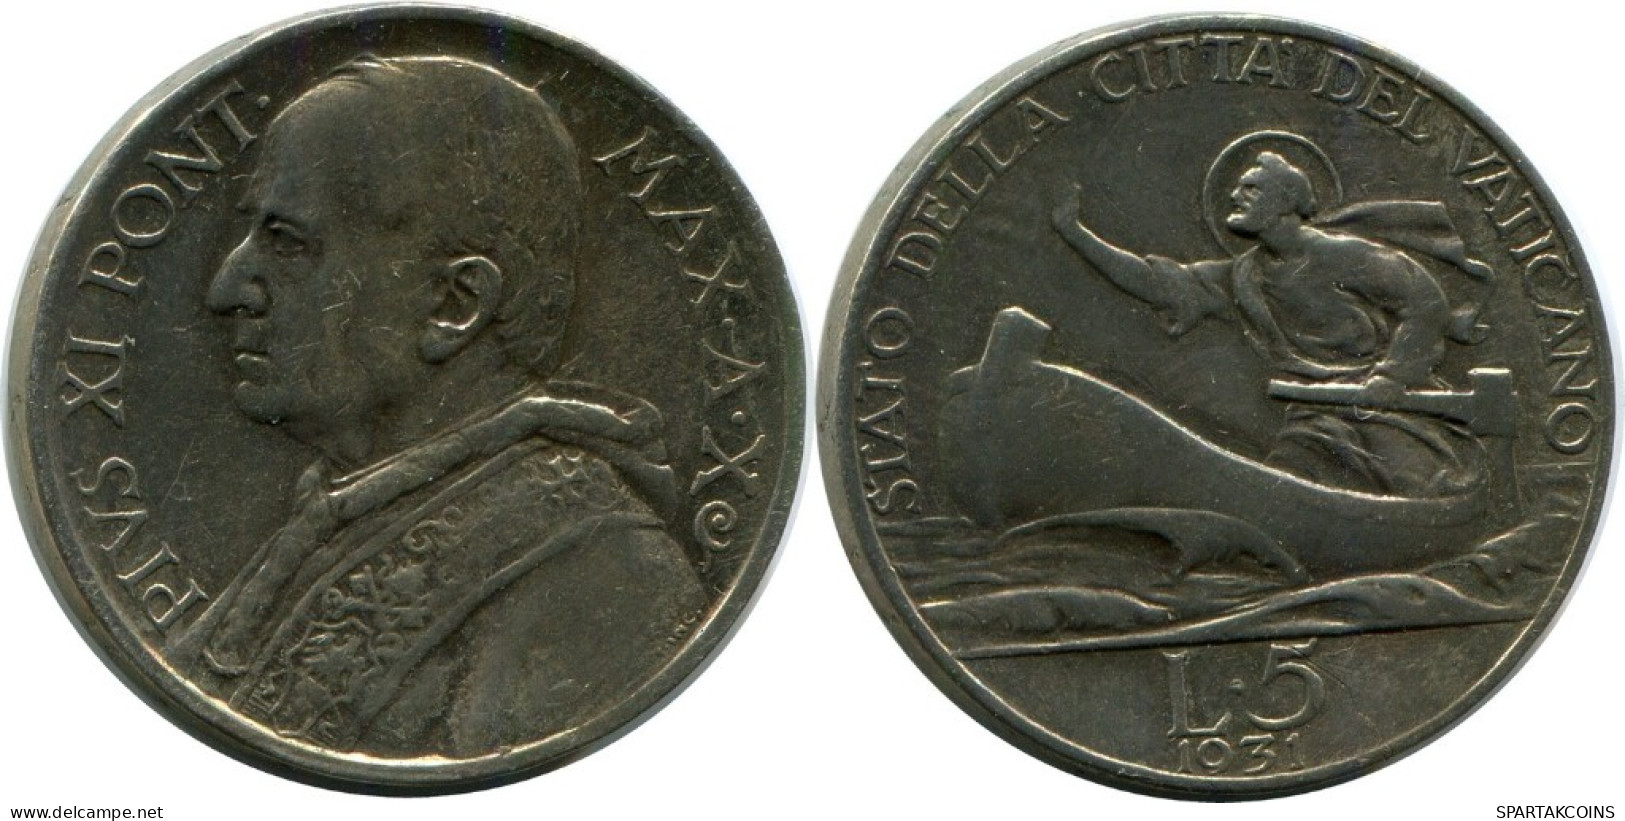 5 LIRE 1931 VATICAN Coin Pius XI (1922-1939) Silver #AH333.16.U.A - Vaticaanstad